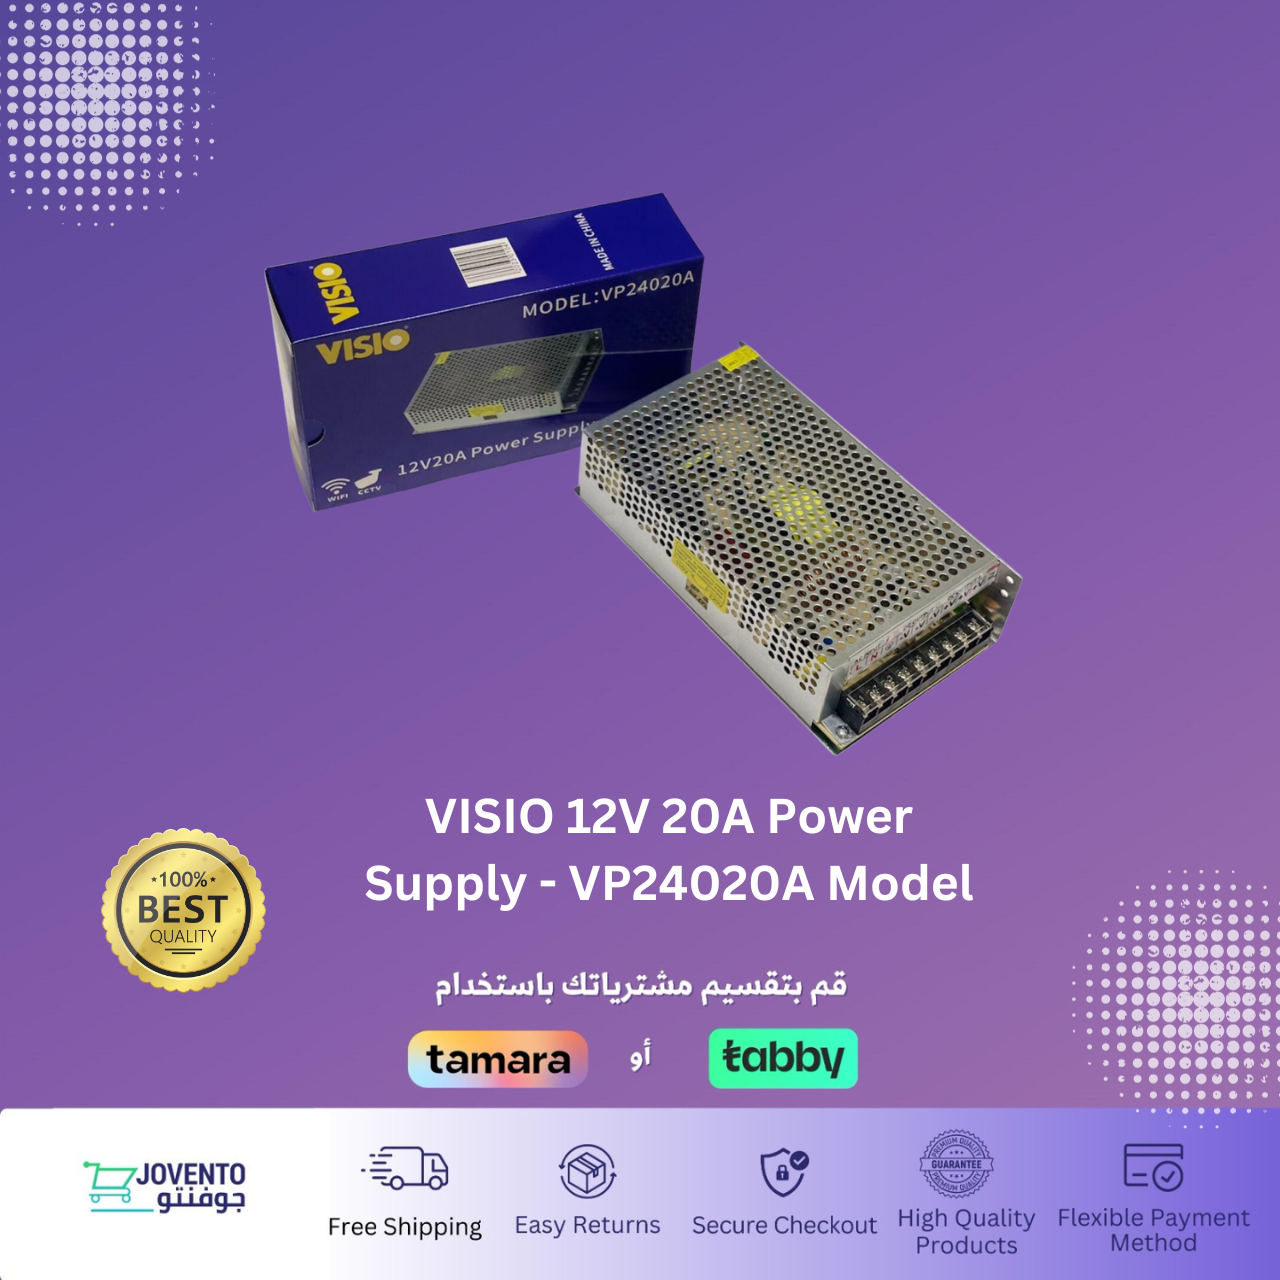 VISIO 12V 20A Power Supply - VP24020A Model